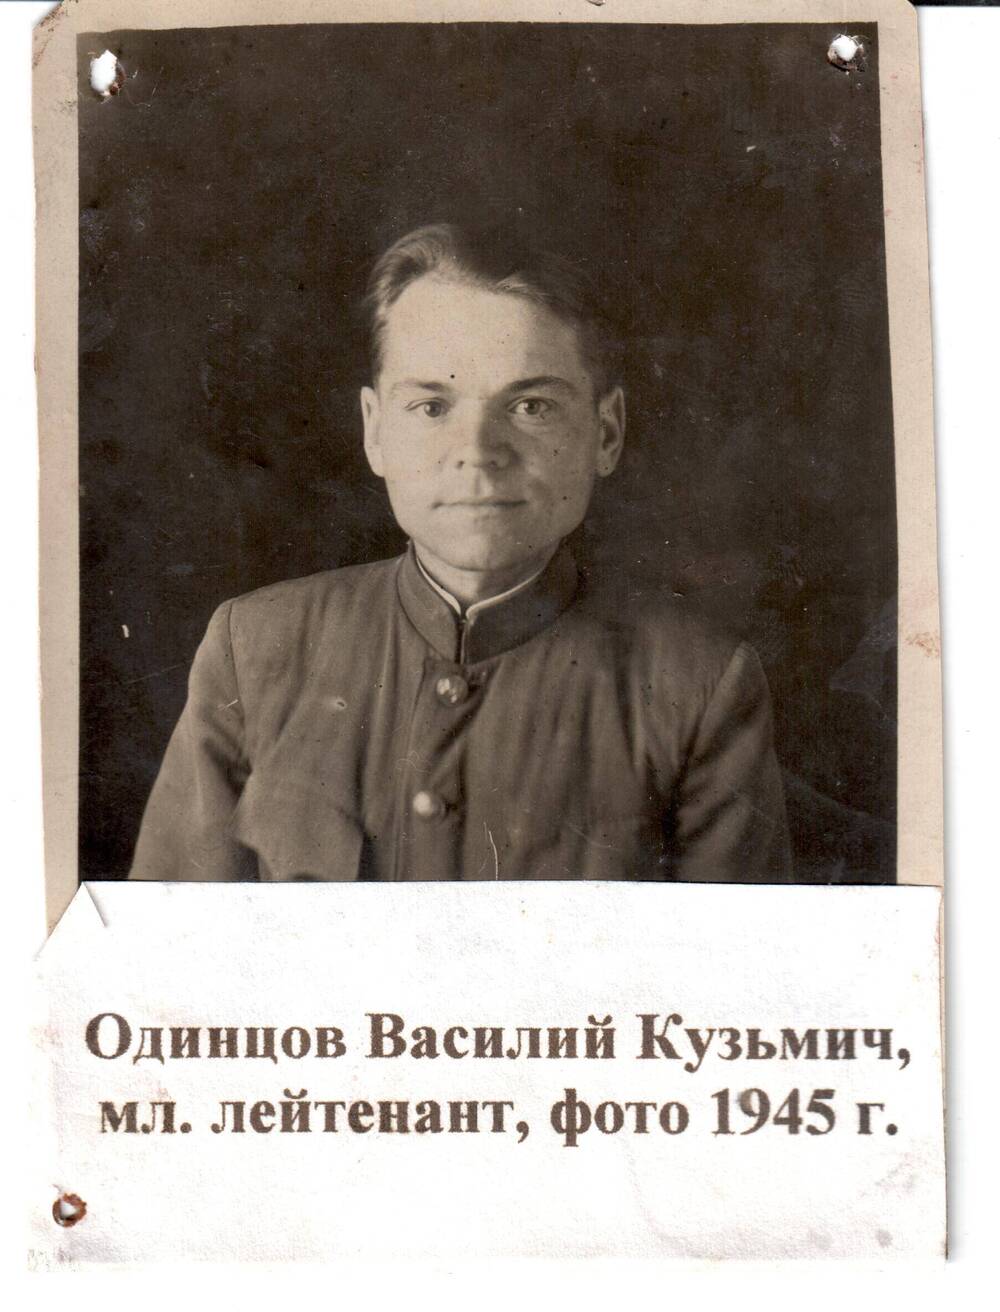 Фотография Одинцова В.К., мл. лейтенанта, 1945г.